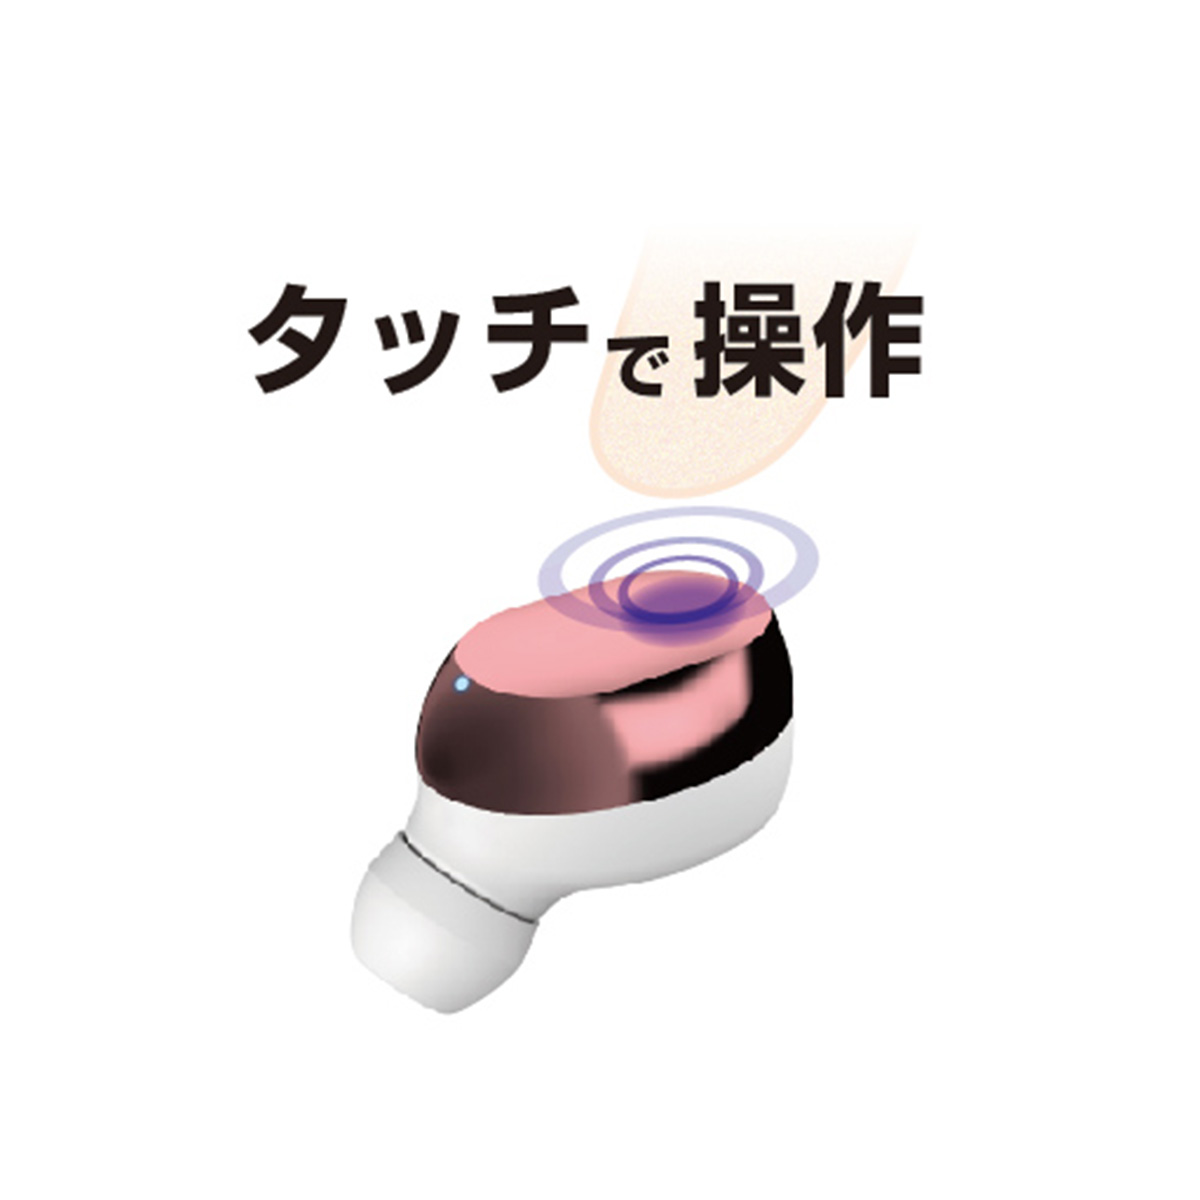 【カシムラ】完全ワイヤレスステレオイヤホン2 充電ケース付